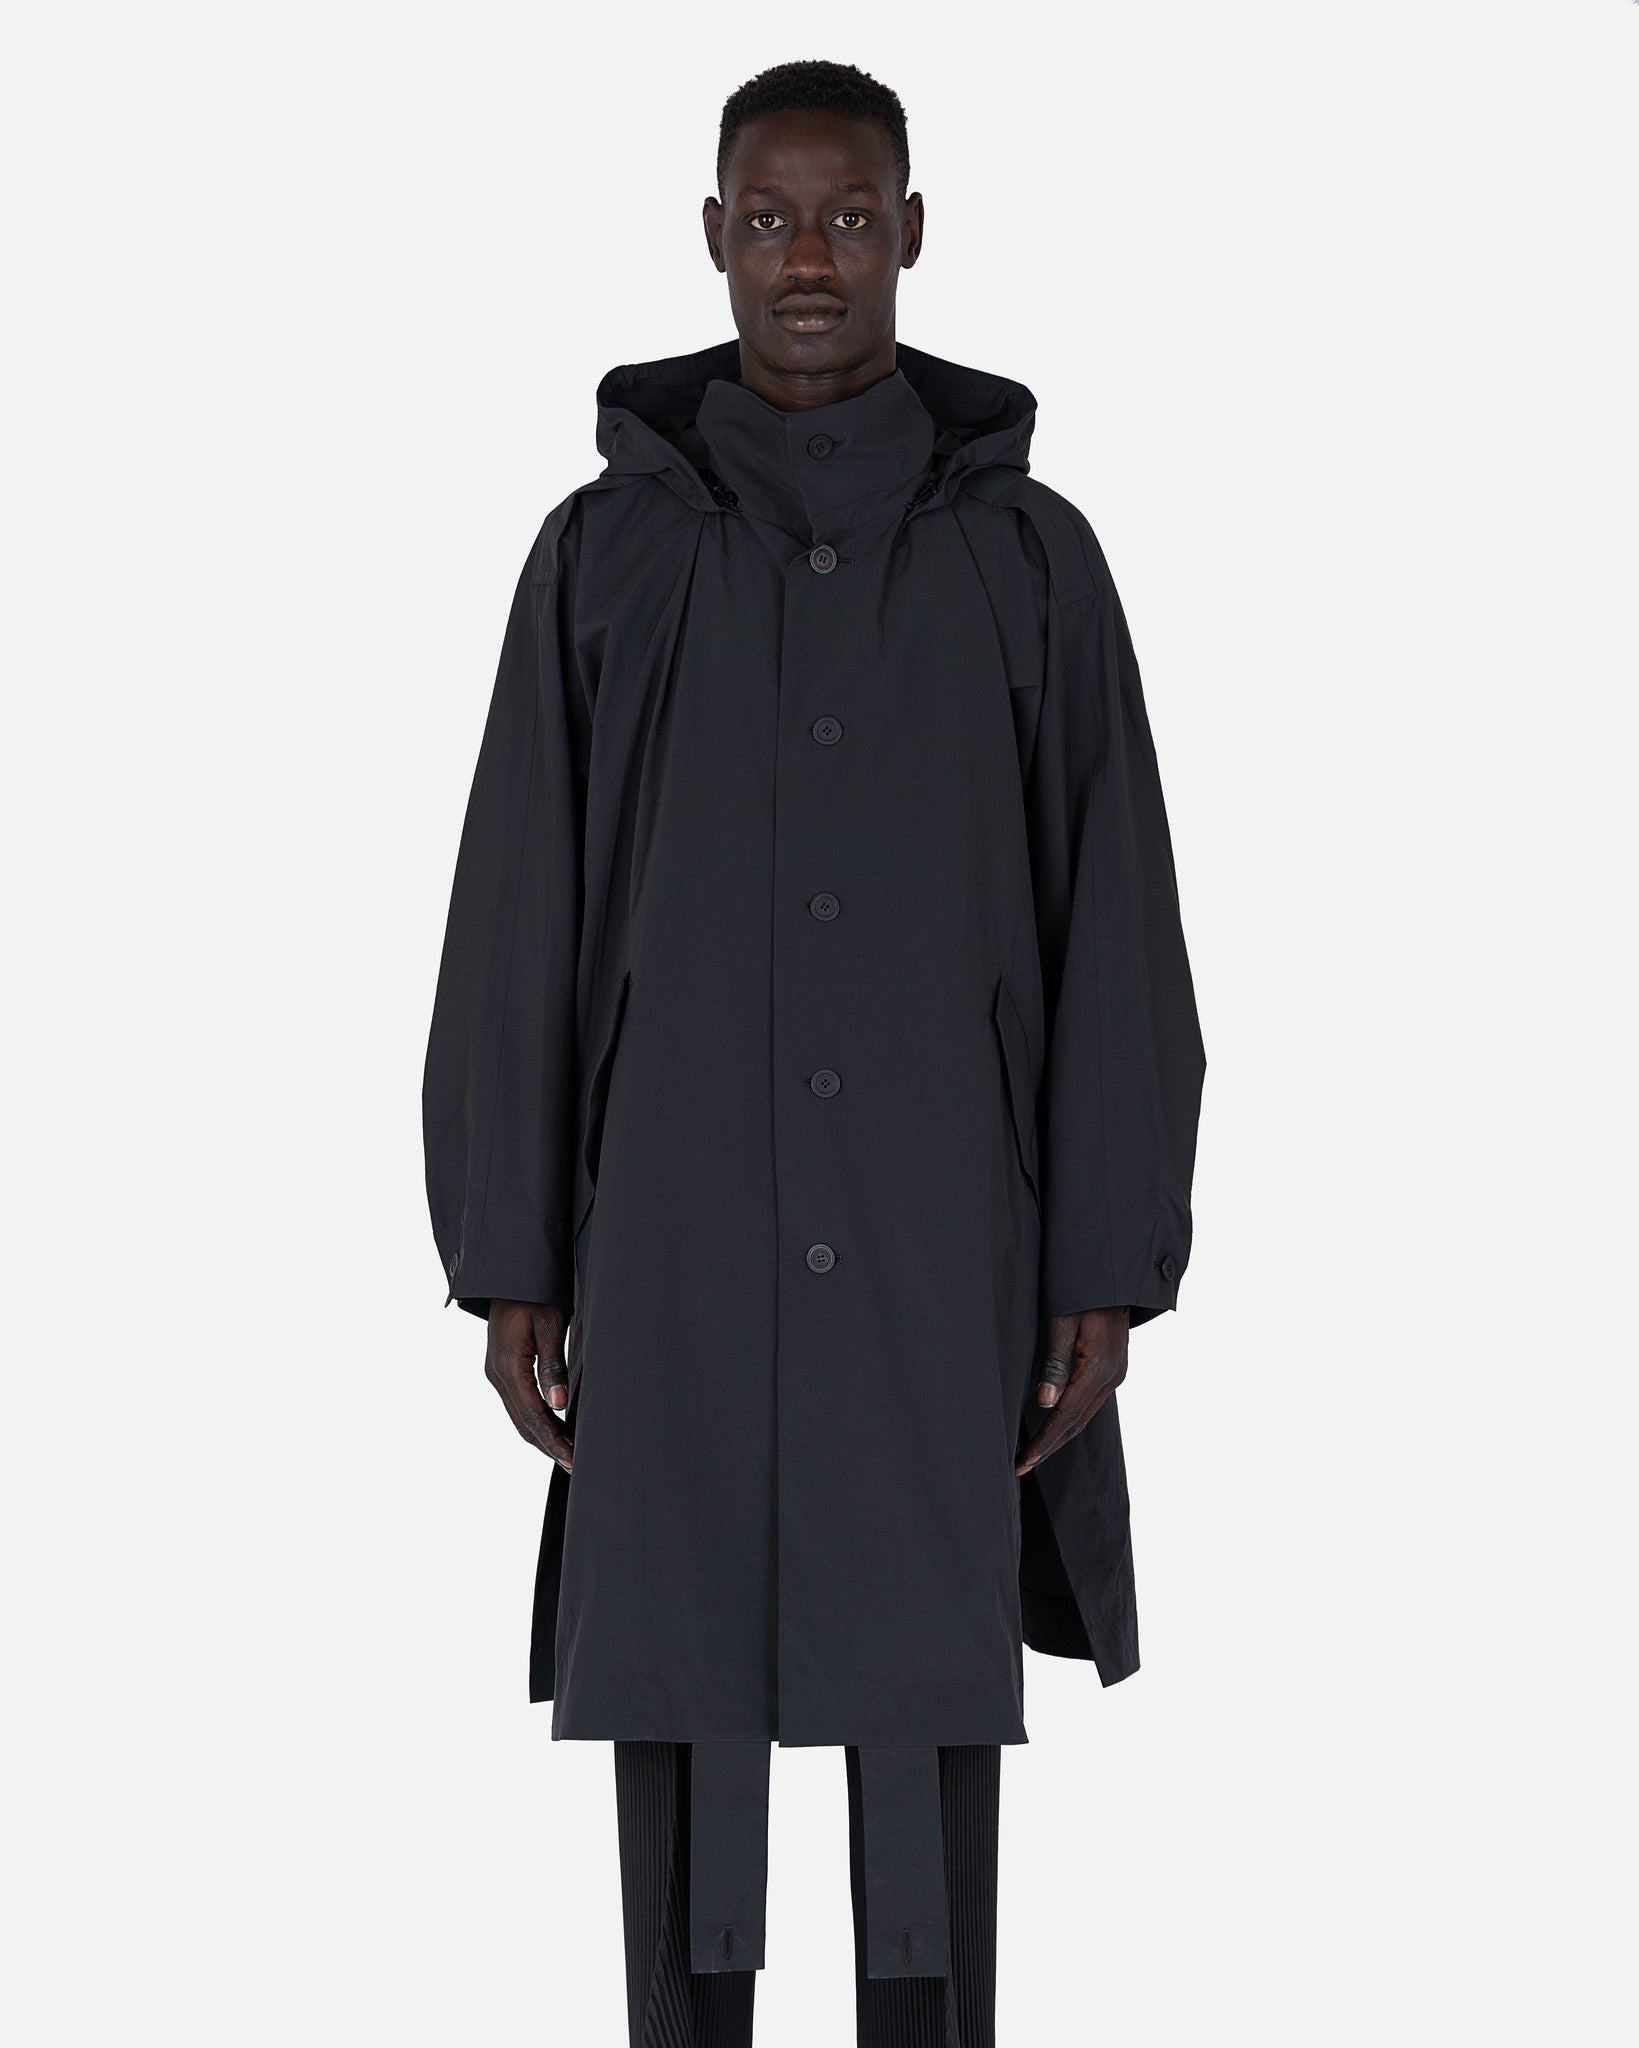 Flip Coat in Black